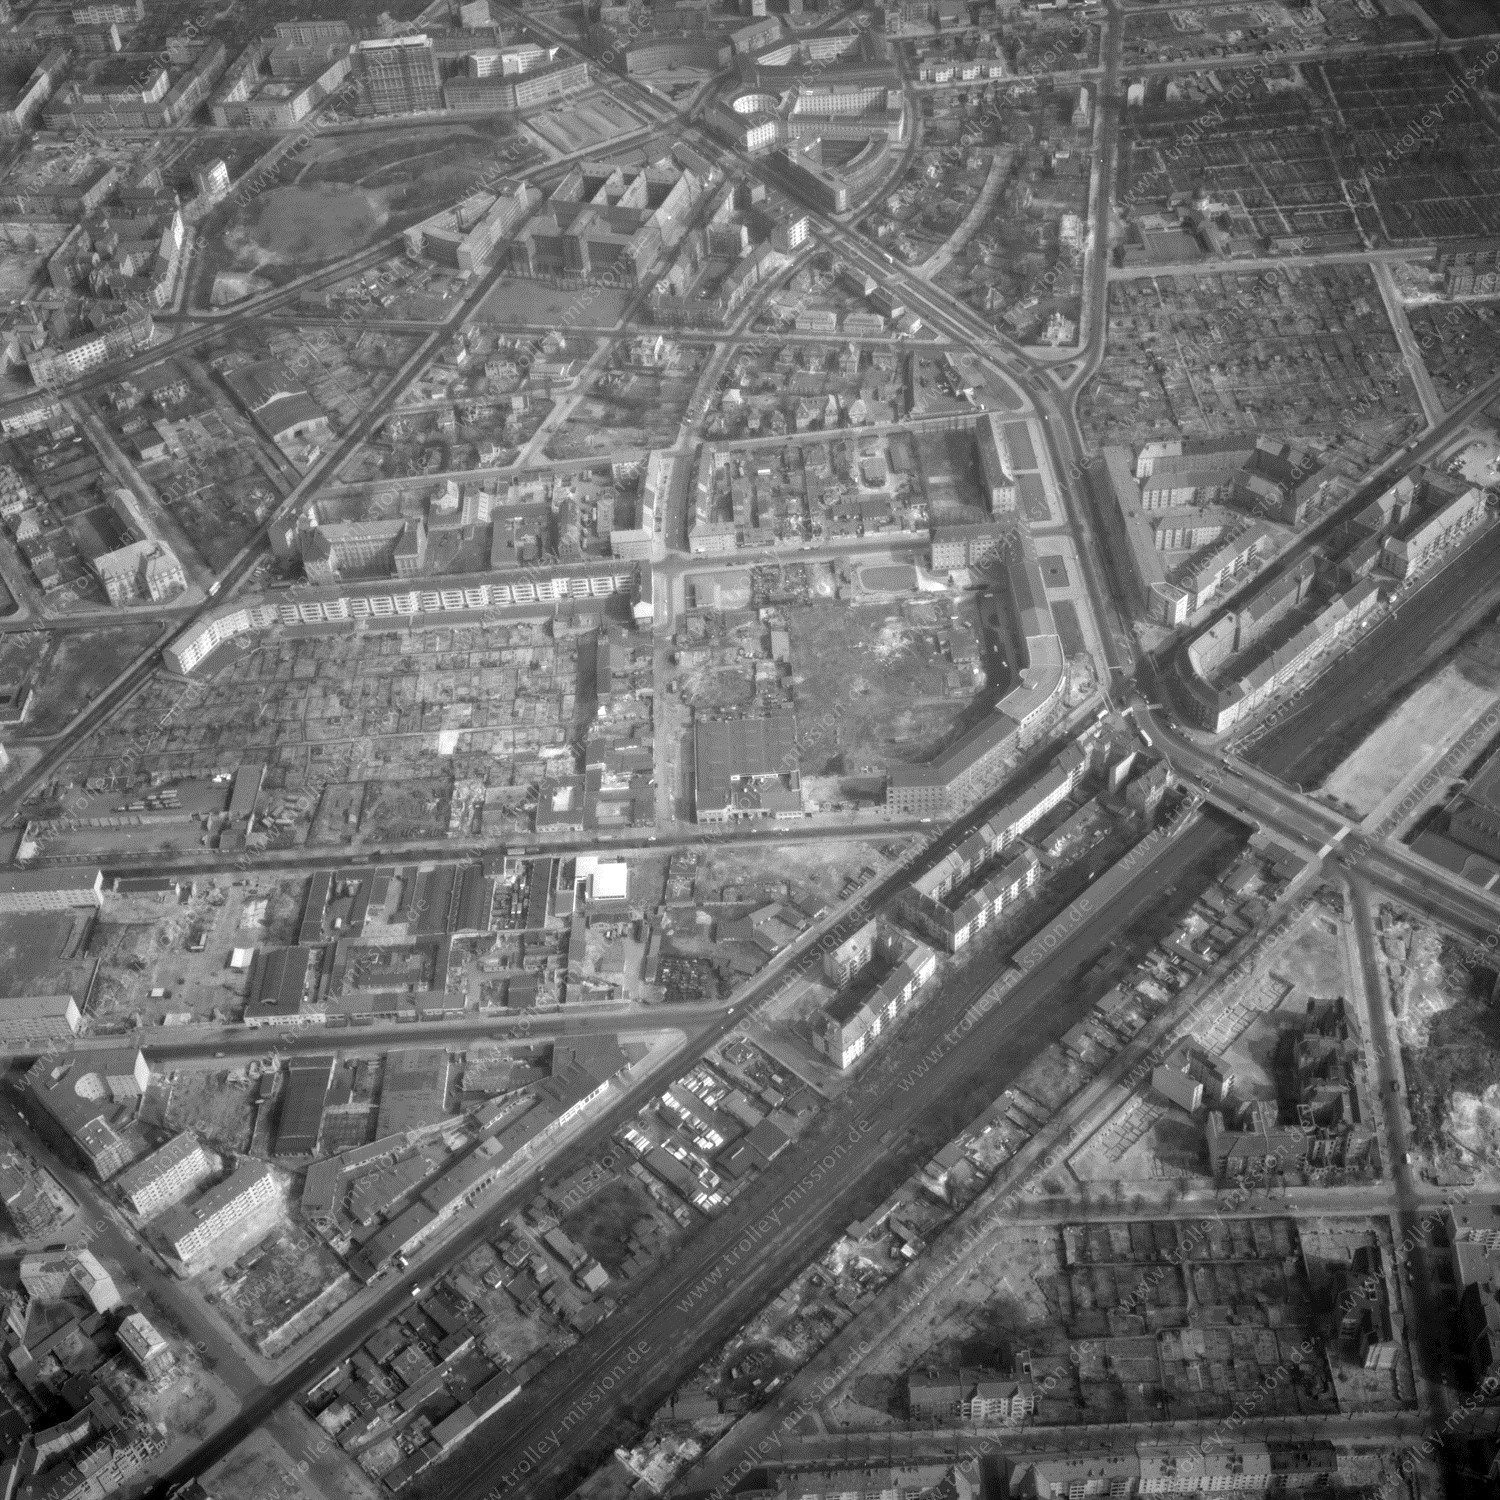 Alte Fotos und Luftbilder von Berlin - Luftbildaufnahme Nr. 06 - Historische Luftaufnahmen von West-Berlin aus dem Jahr 1954 - Flugstrecke Bravo